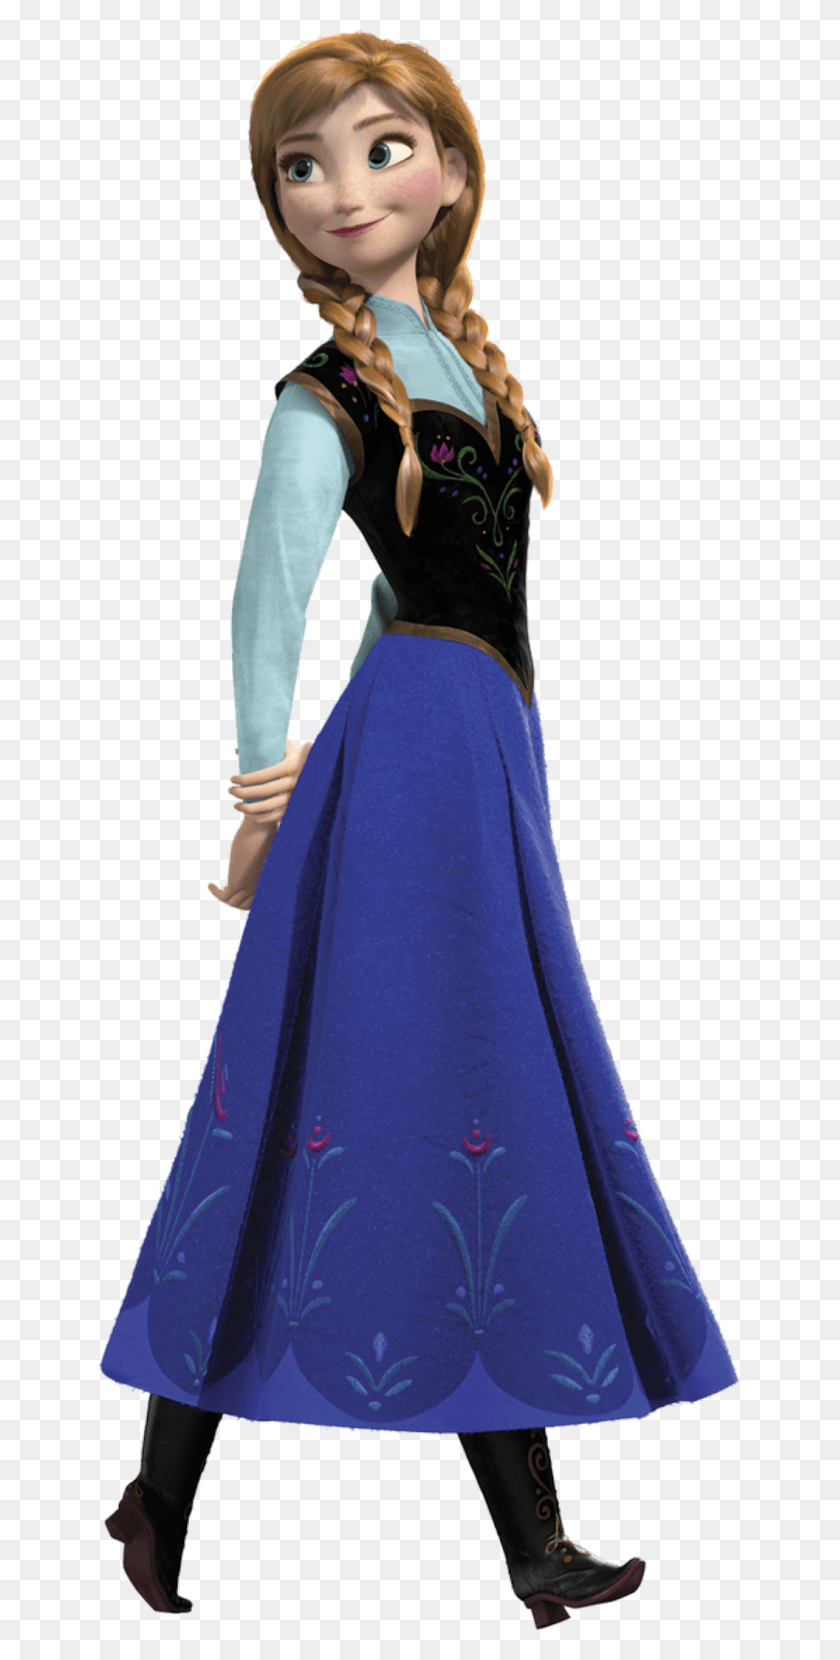 641x1600 Frozen Images Fiesta Frozen Cumpleaños Decoraciones Disney Princess Anna, Ropa, Vestimenta, Vestido De Noche Hd Png Descargar